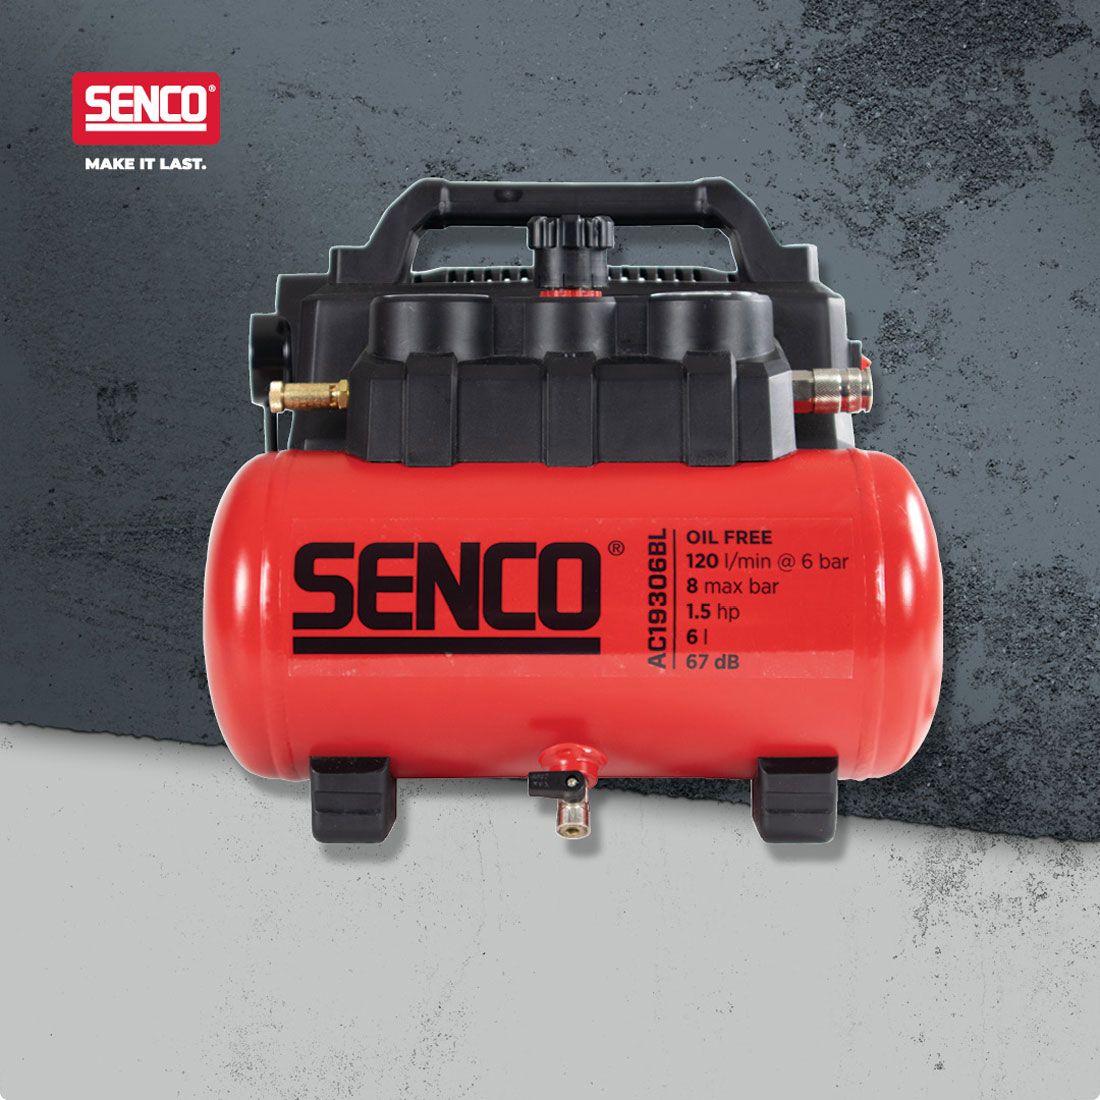 Senco AFN0036UK2 6L Low Noise Compressor 240V - AC19306BL-UK2